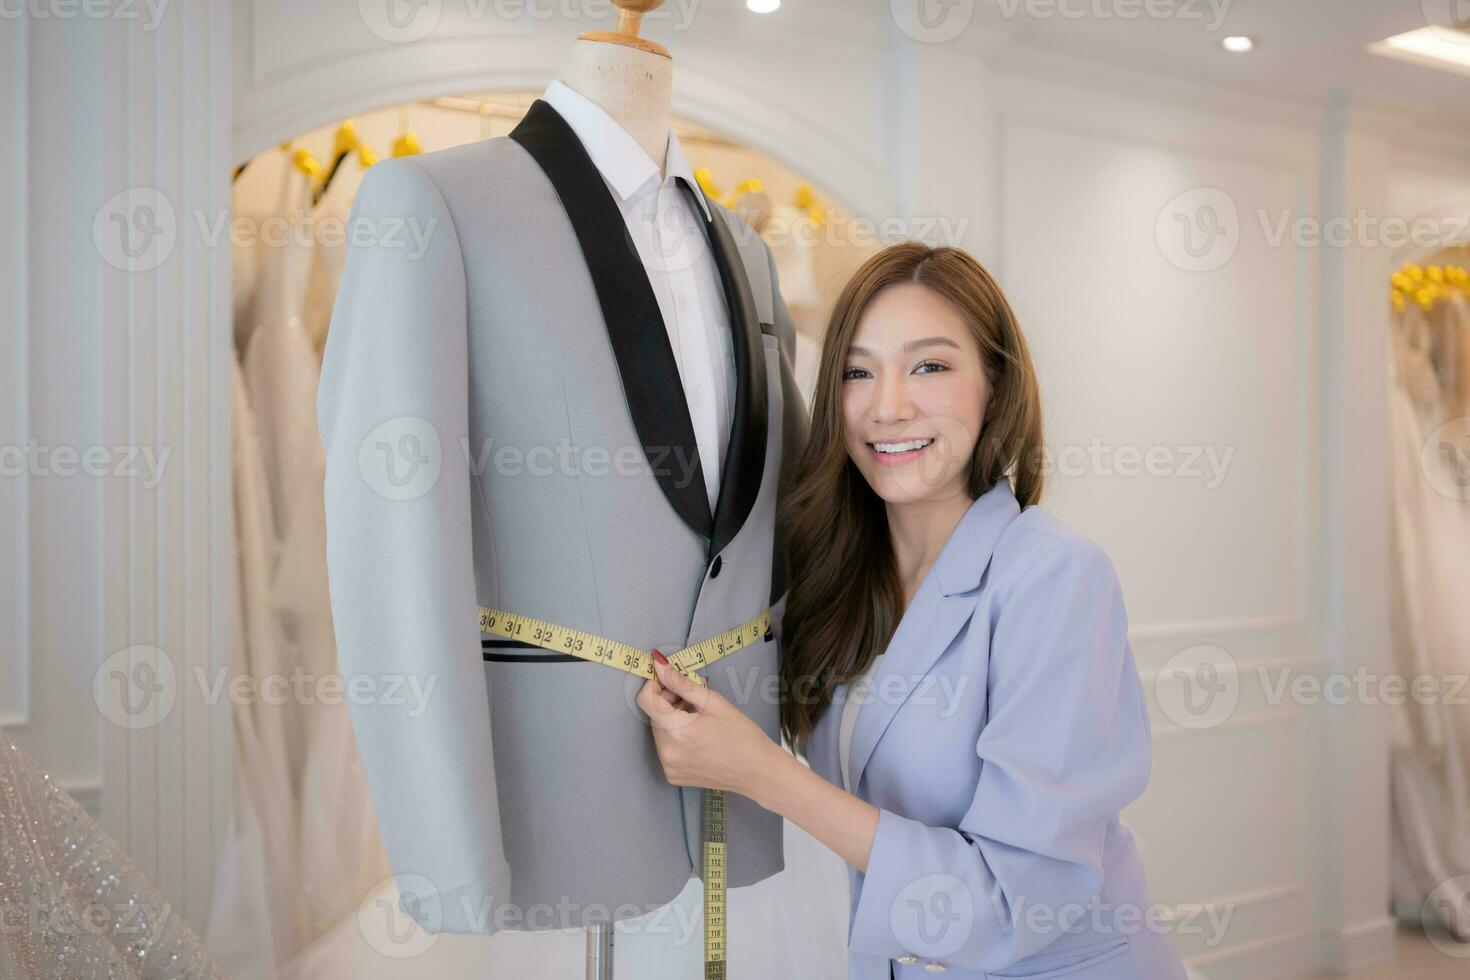 asiatico moda progettisti rendere sicuro il quello dello sposo attrezzatura è assolutamente preciso e pronto per il sposa e sposo per provare Su. foto